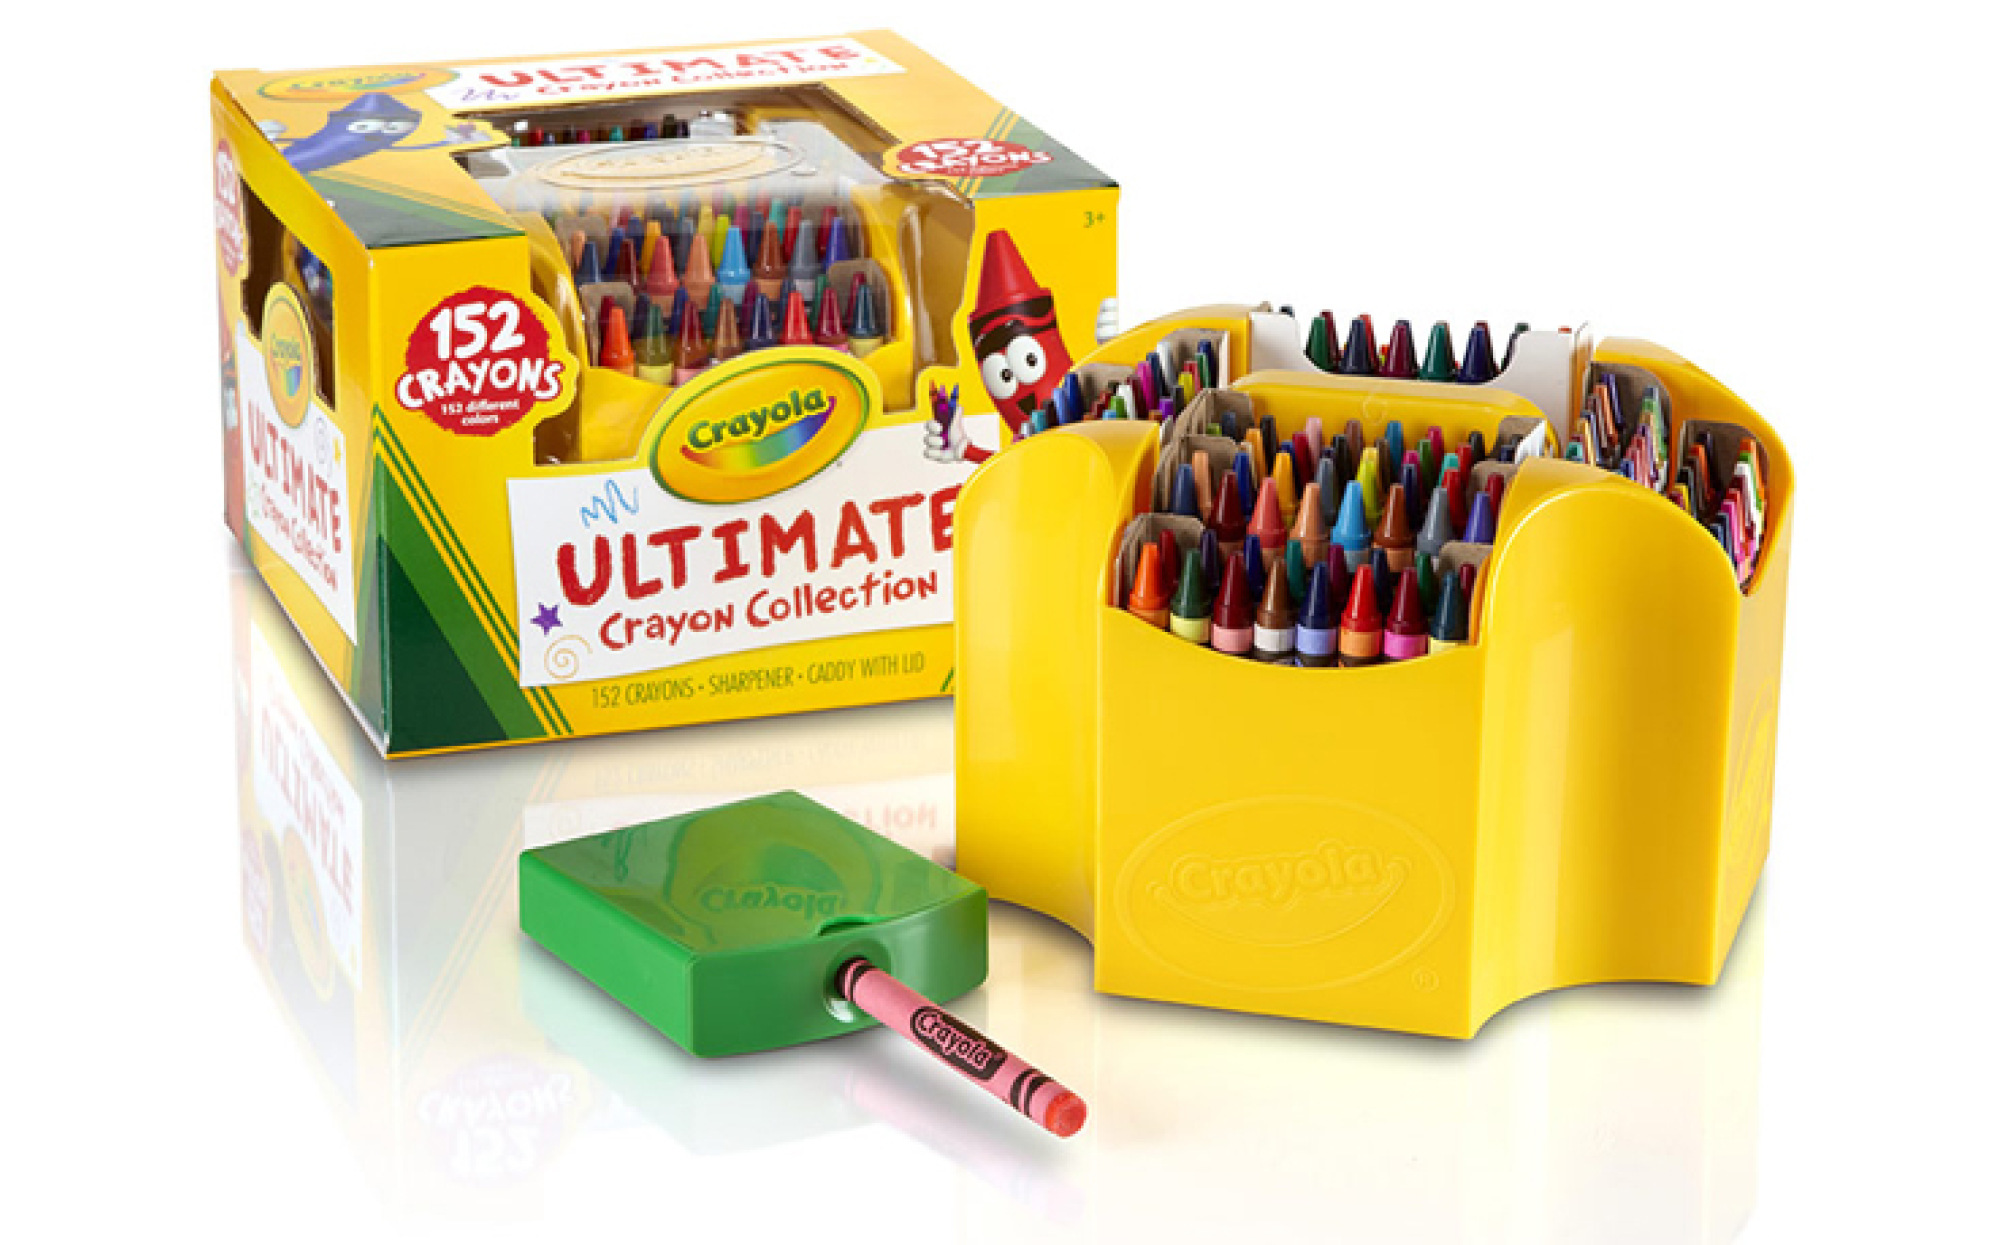 Crayola Crayons 152 Count Box